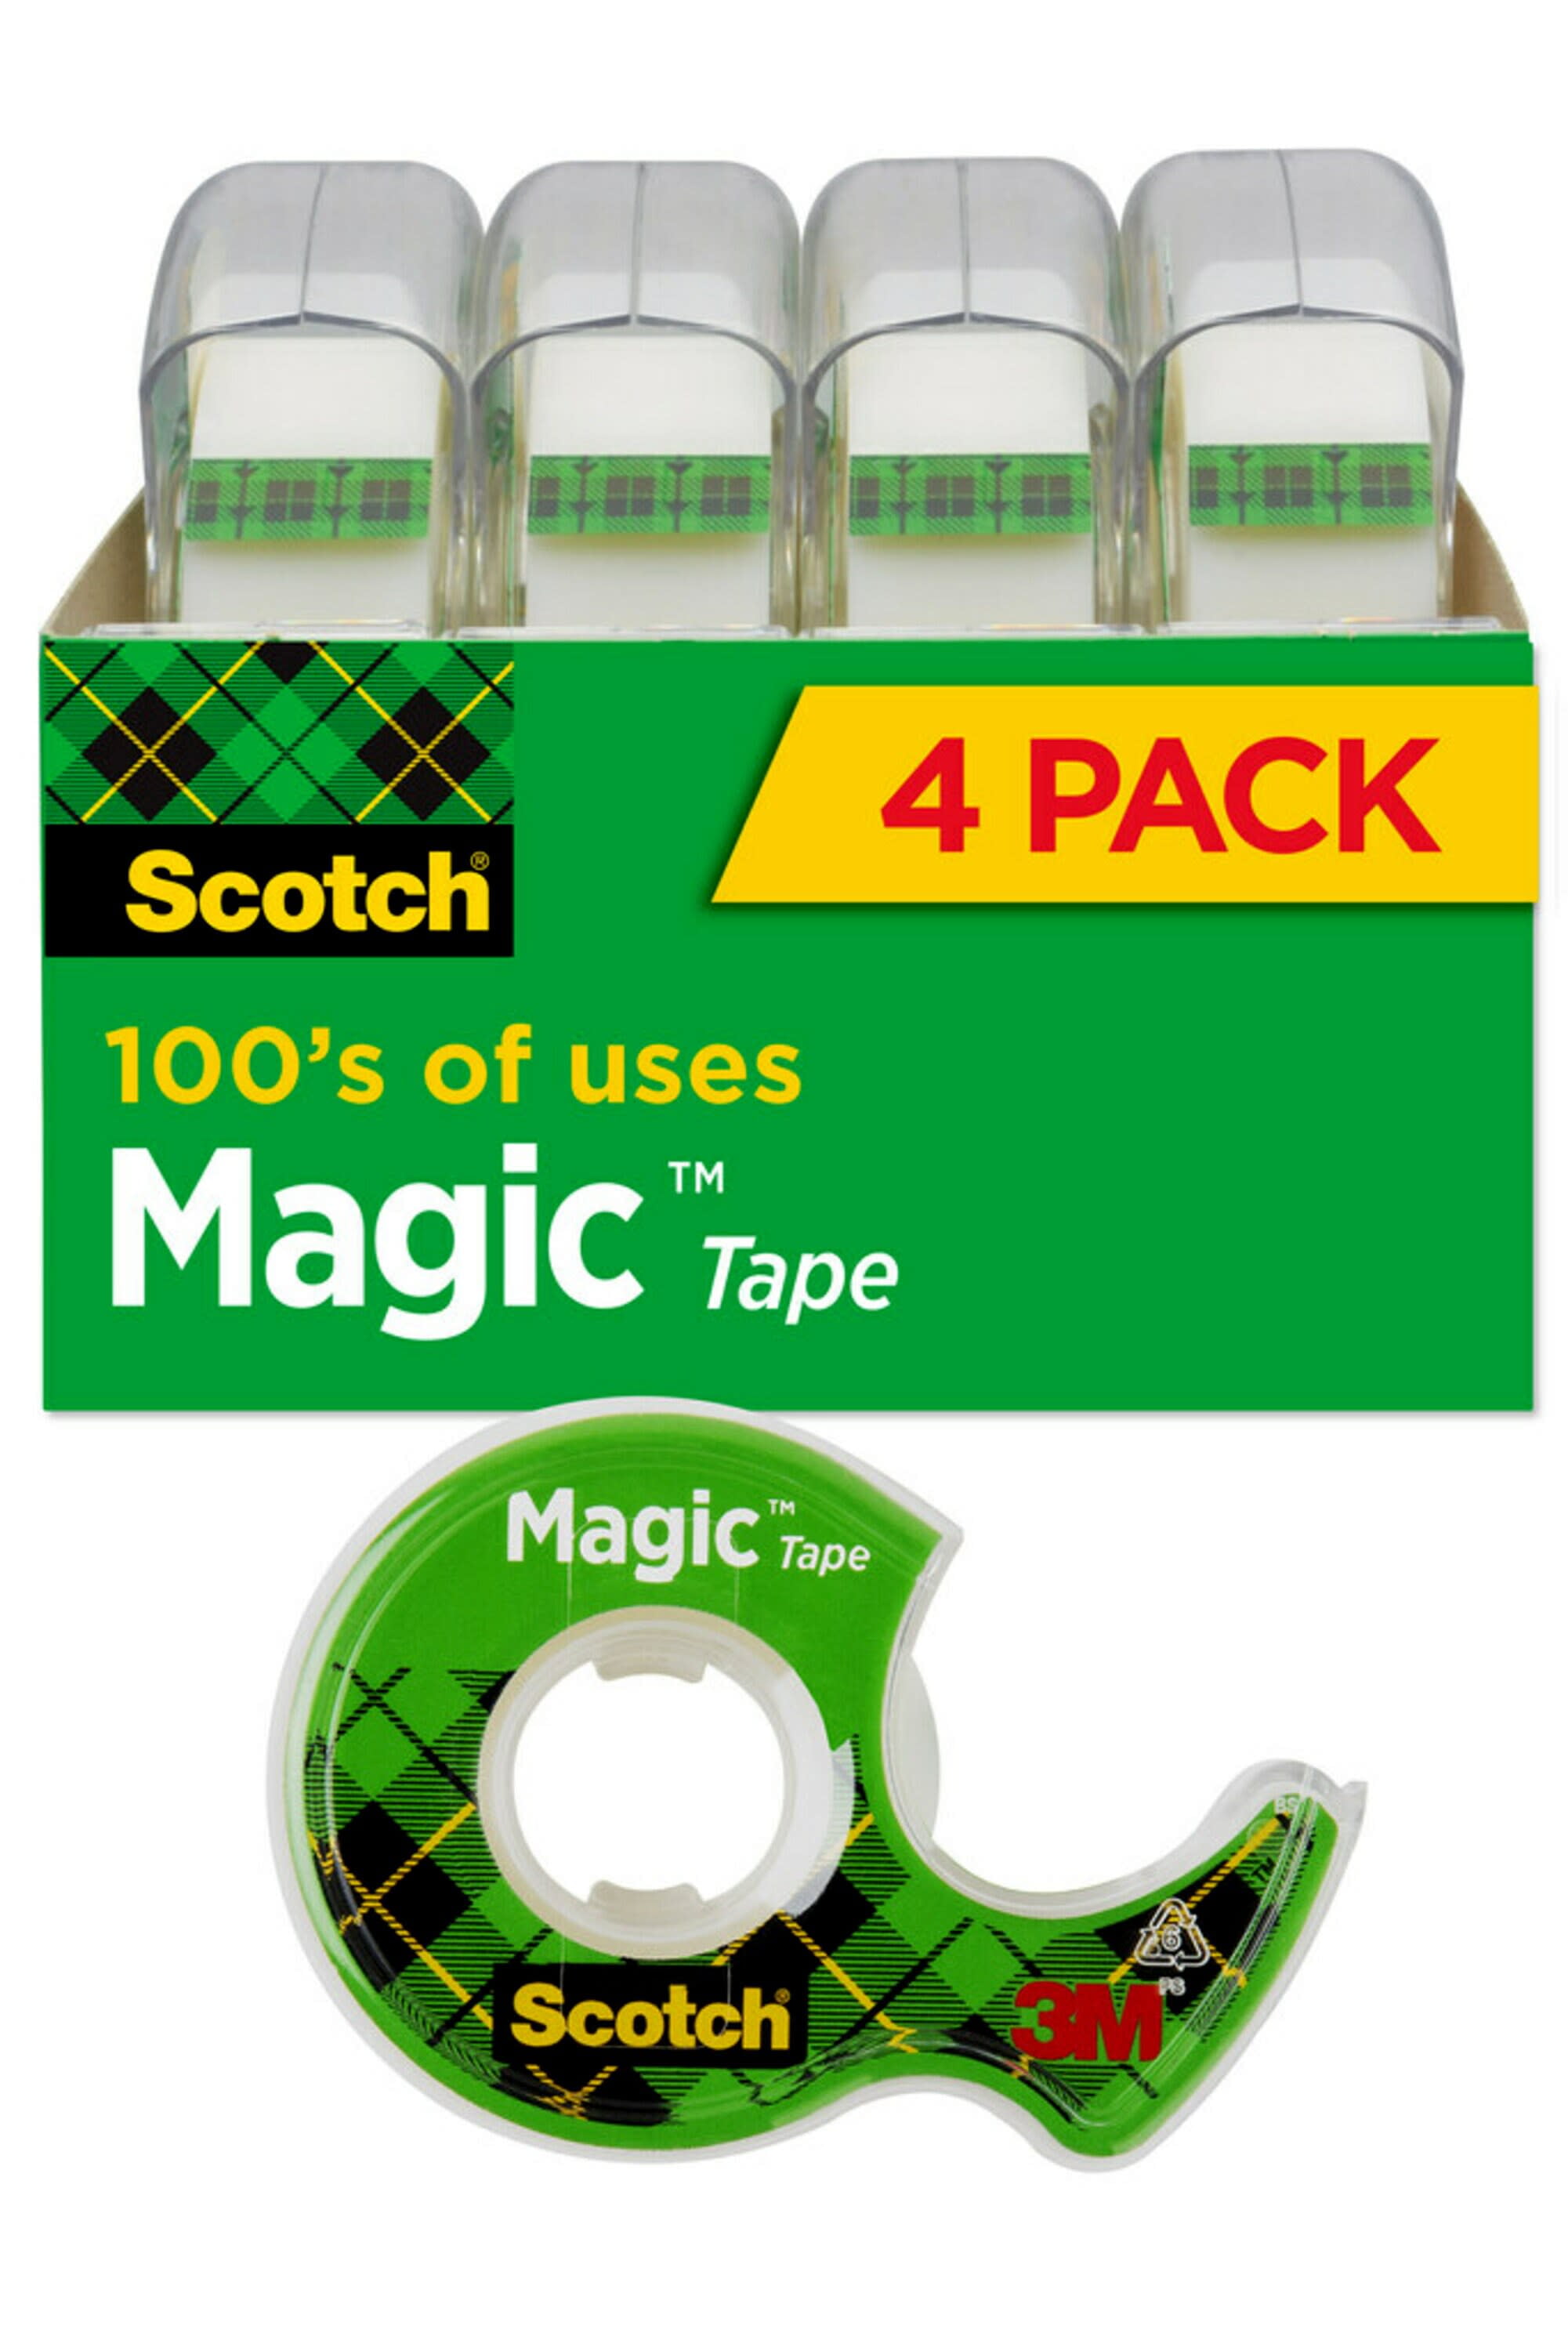 Scotch 3/4 in. x 300 in. Magic Tape (3-Pack) 3105 - The Home Depot